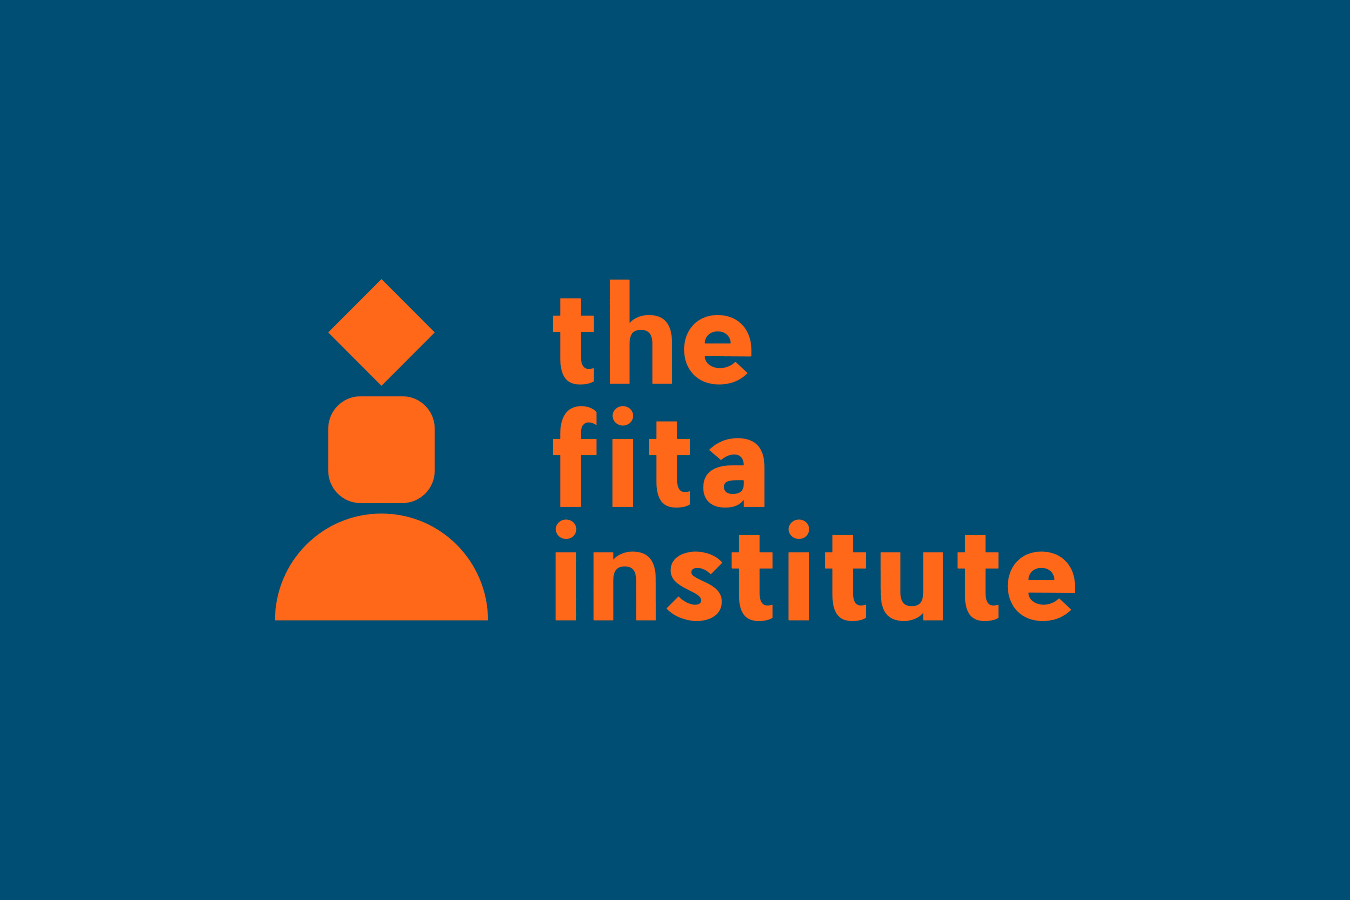 The FITA Institute - Eva Arias Graphic Studio